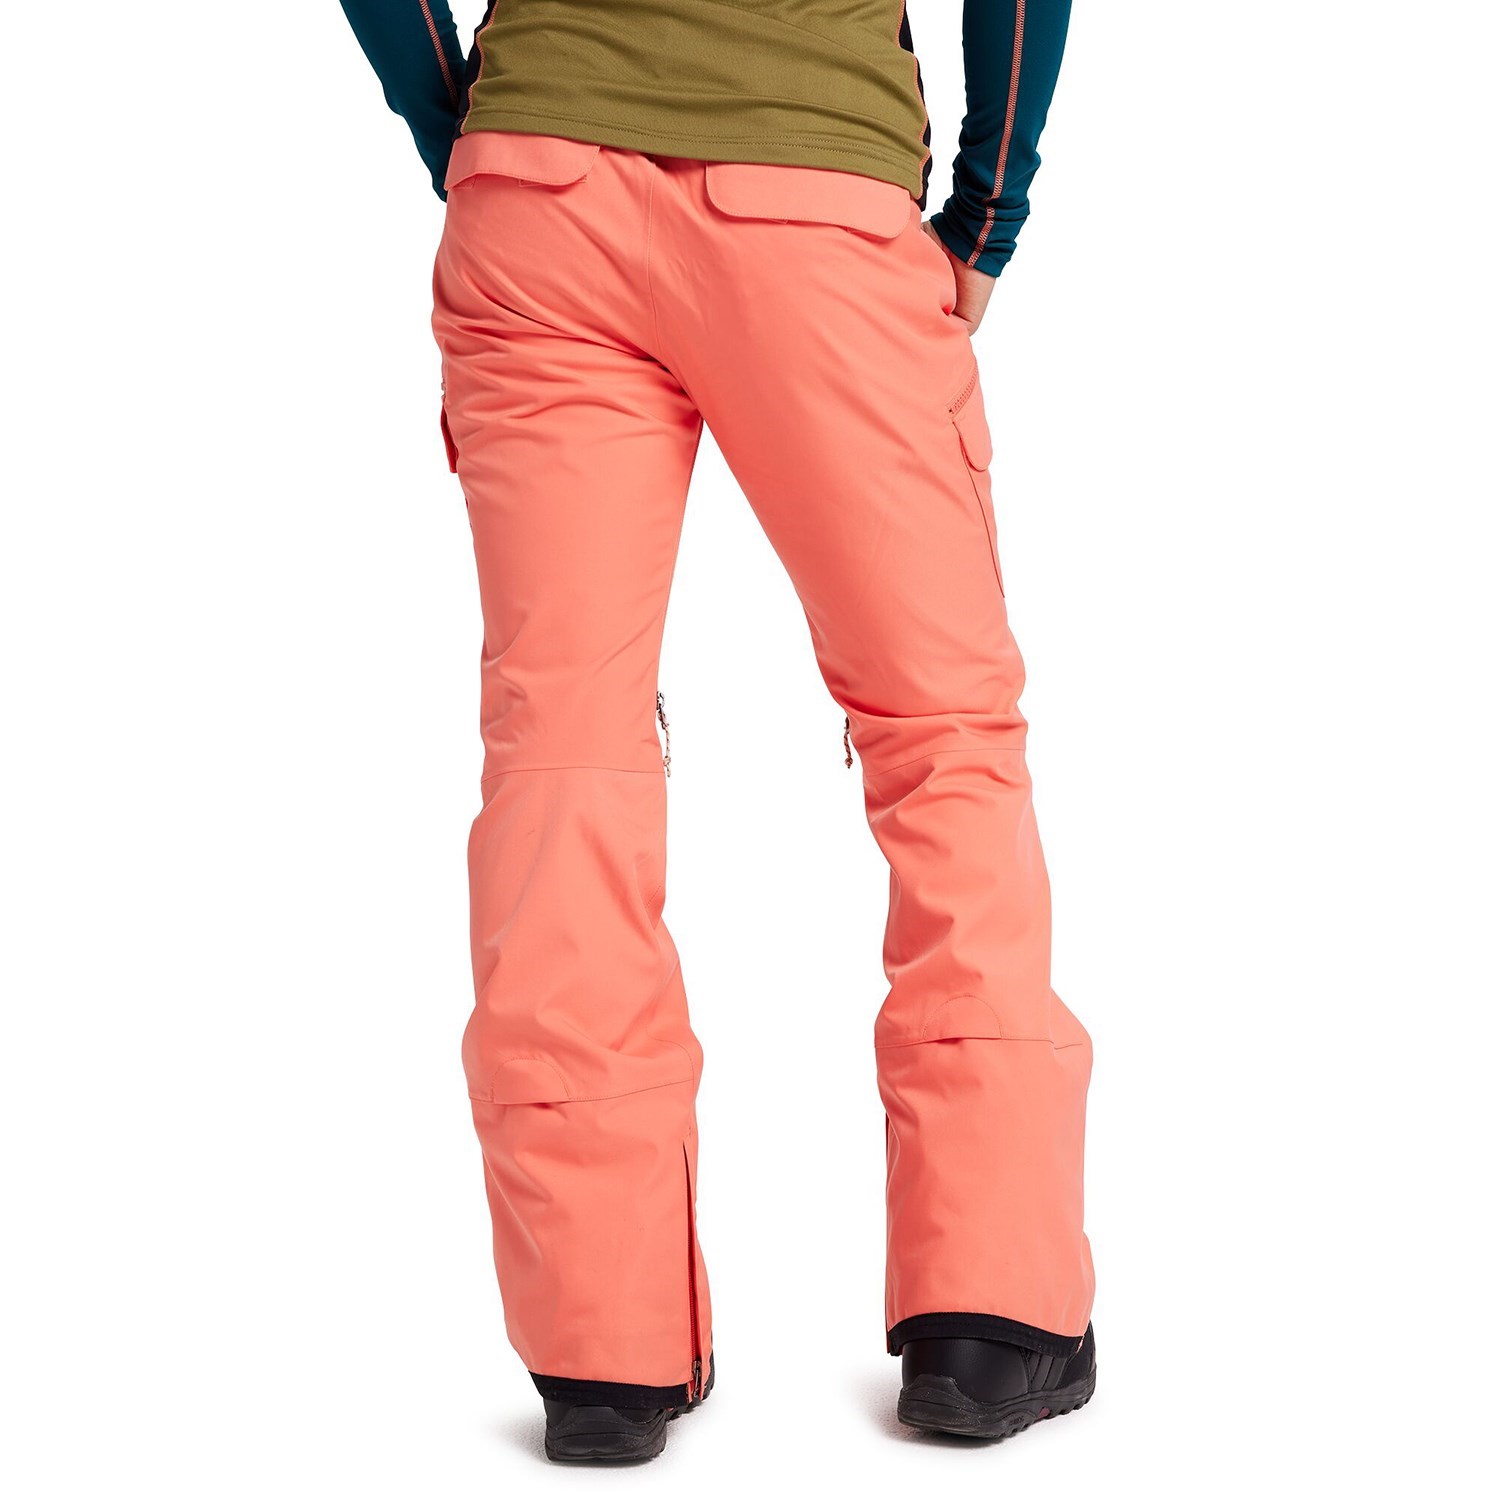 Штаны для сноуборда Burton Gloria Insulated Pant купить в Boardshop №1